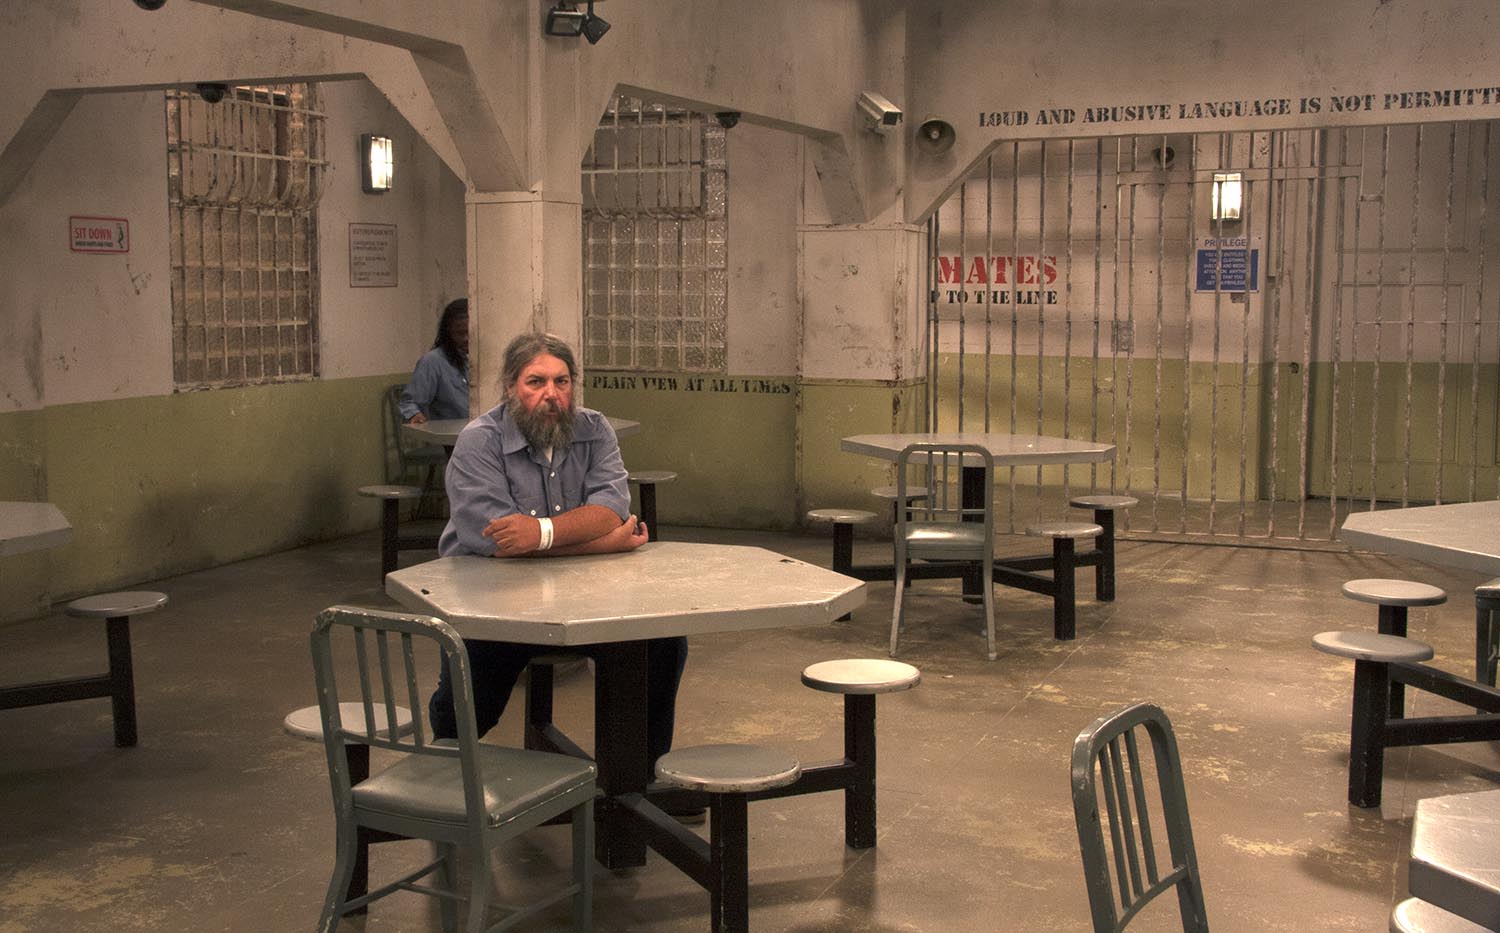 jail visit room